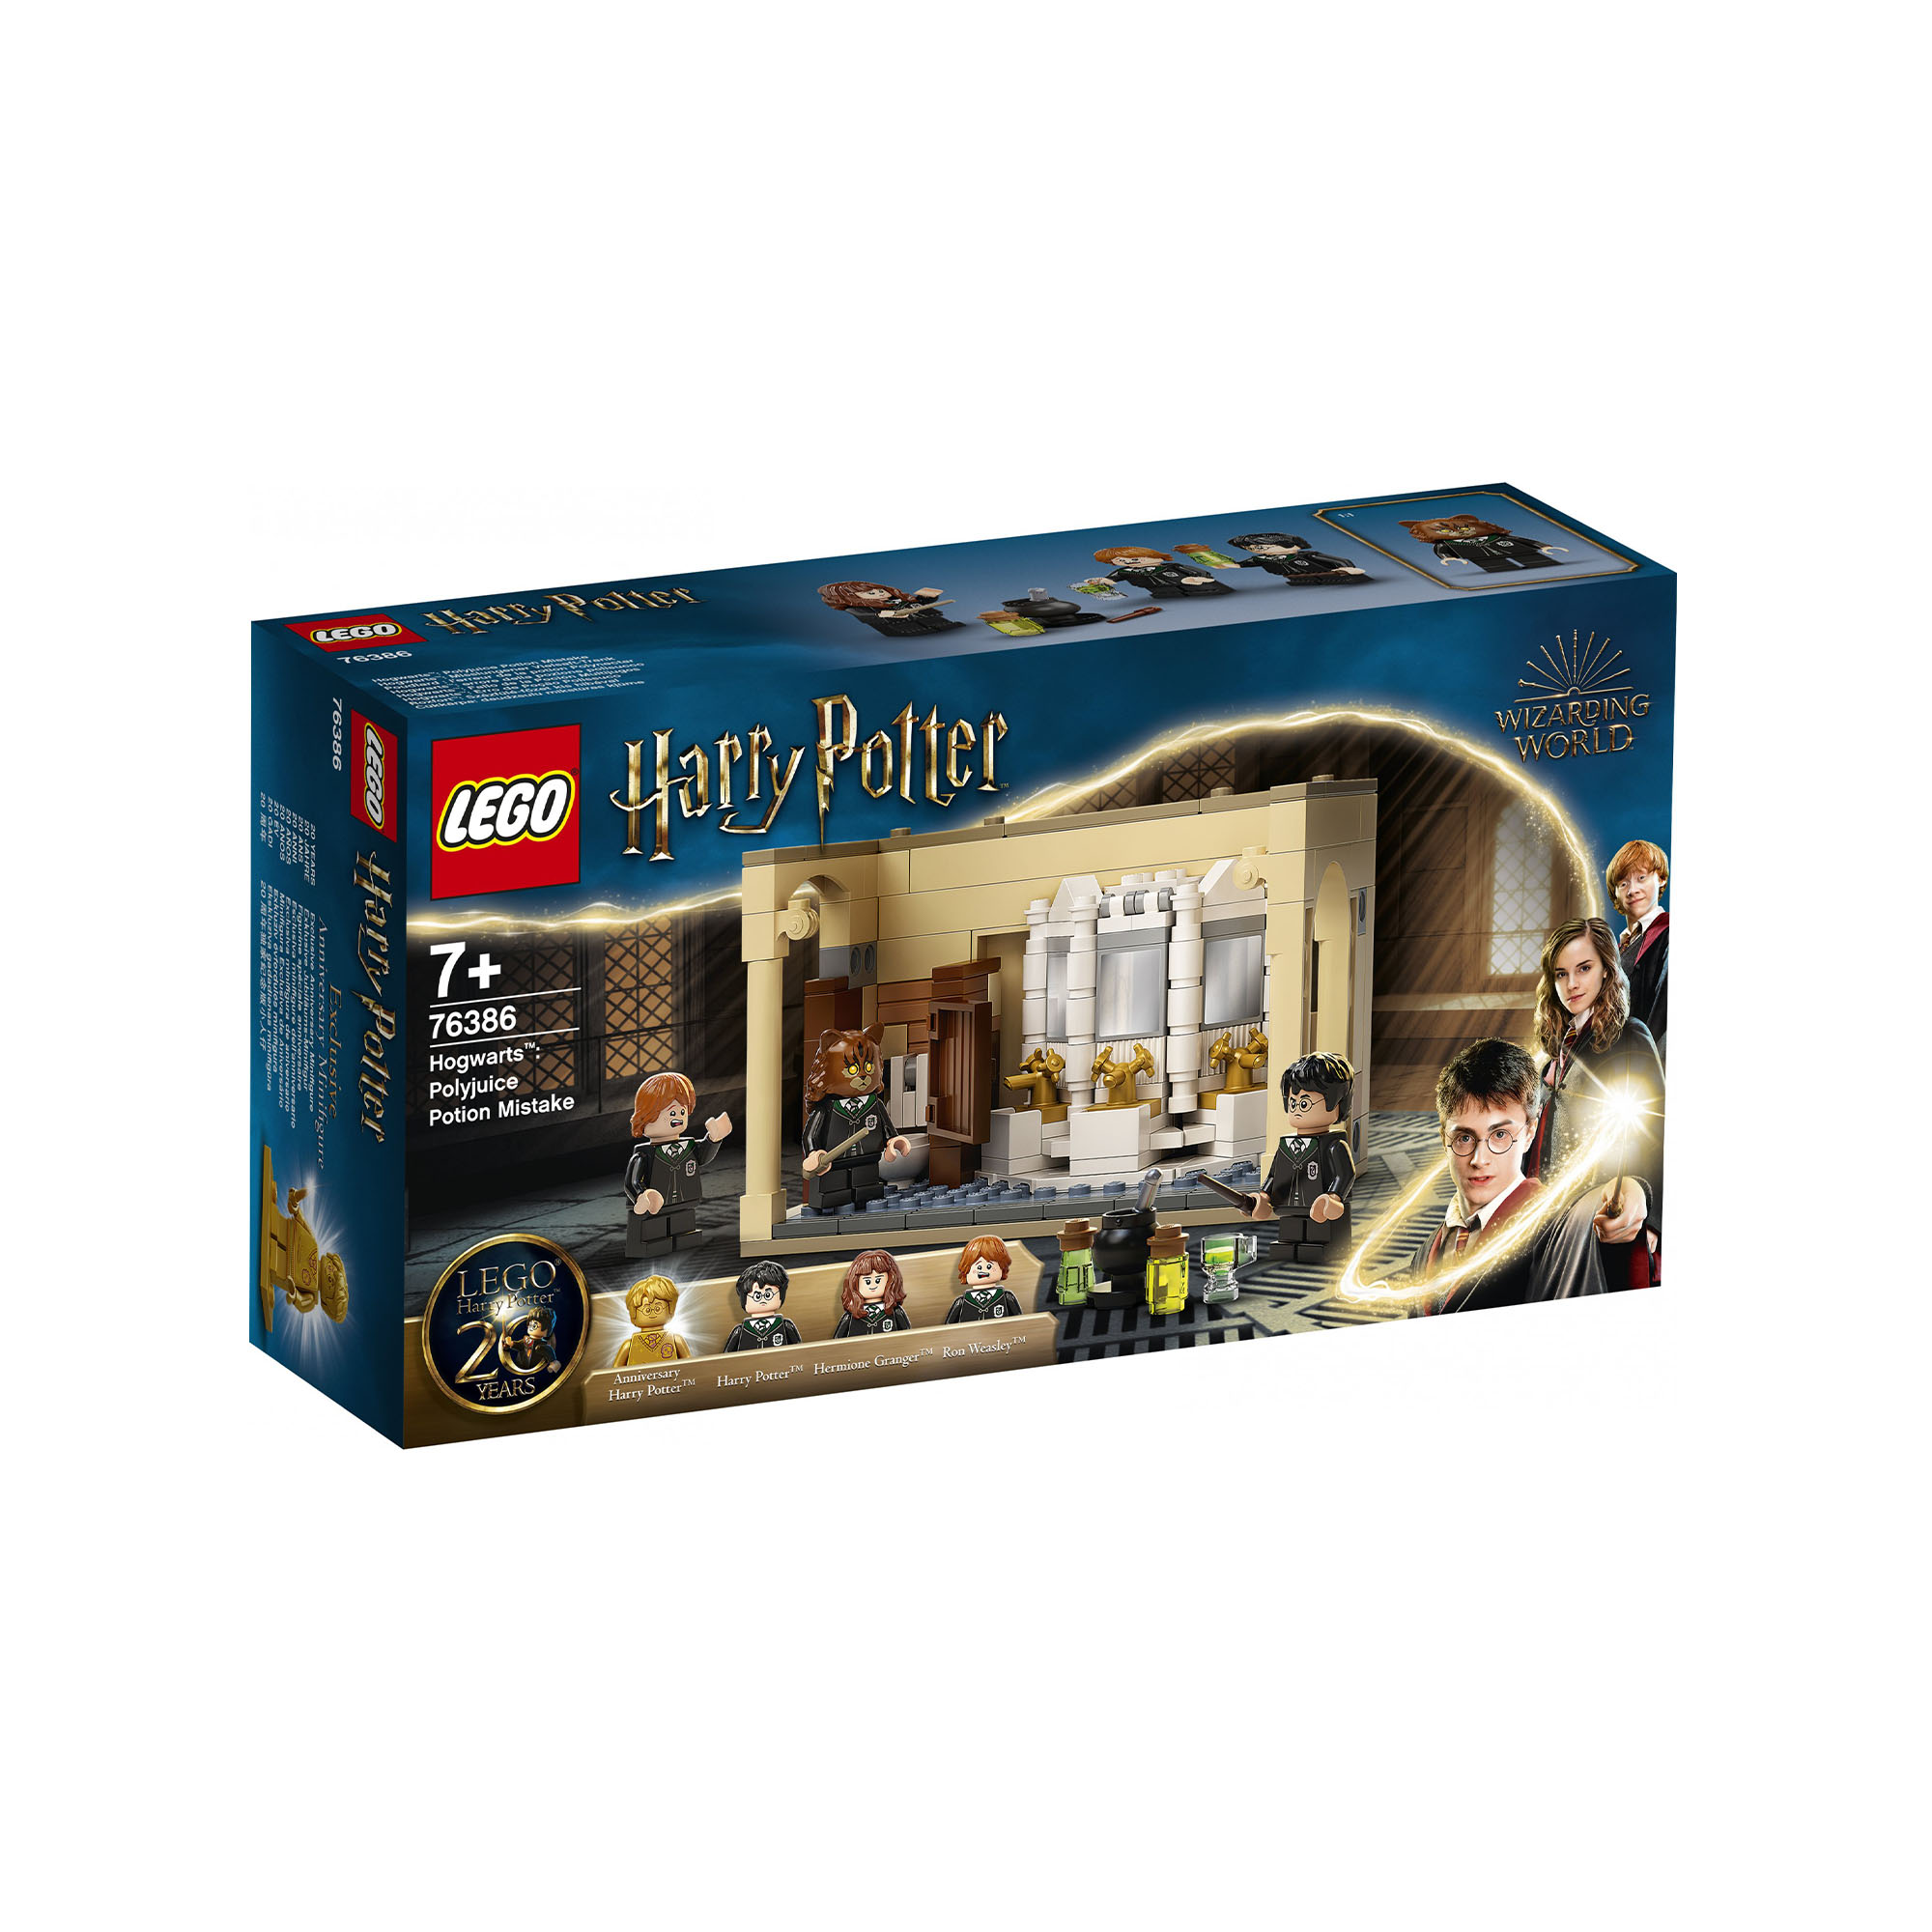 LEGO Harry Potter Hogwarts: Errore della Pozione Polisucco, Castello Giocattolo  76386, , large